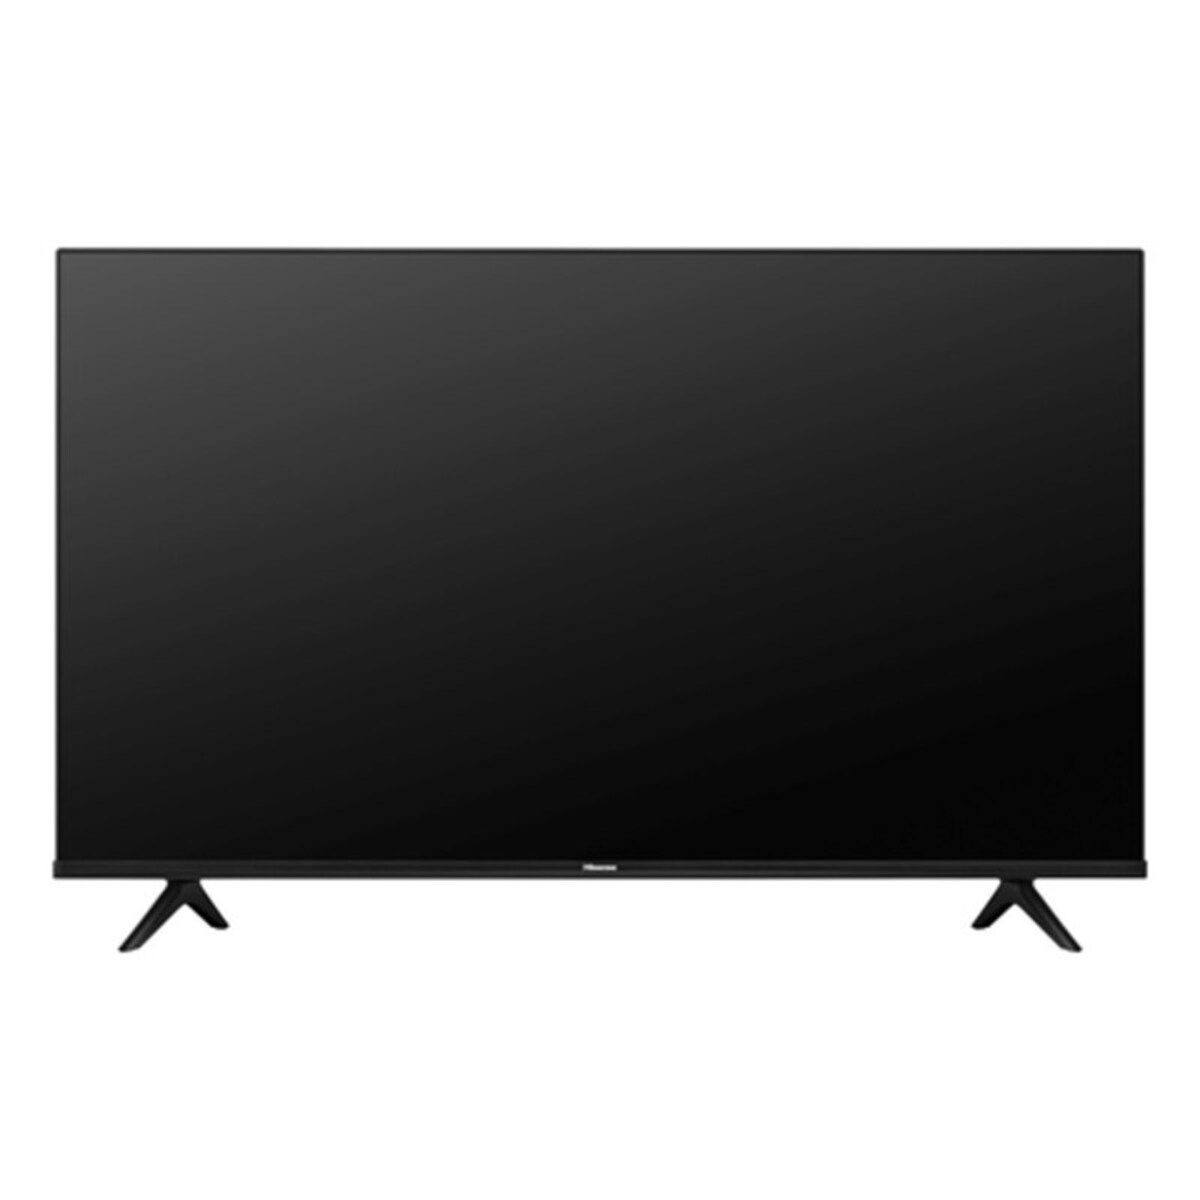 هايسنس تلفزيون ذكي 43 بوصة سلسلة A6 4K بدقة فائقة VIDAA U5 باللون الأسود، 43A61H